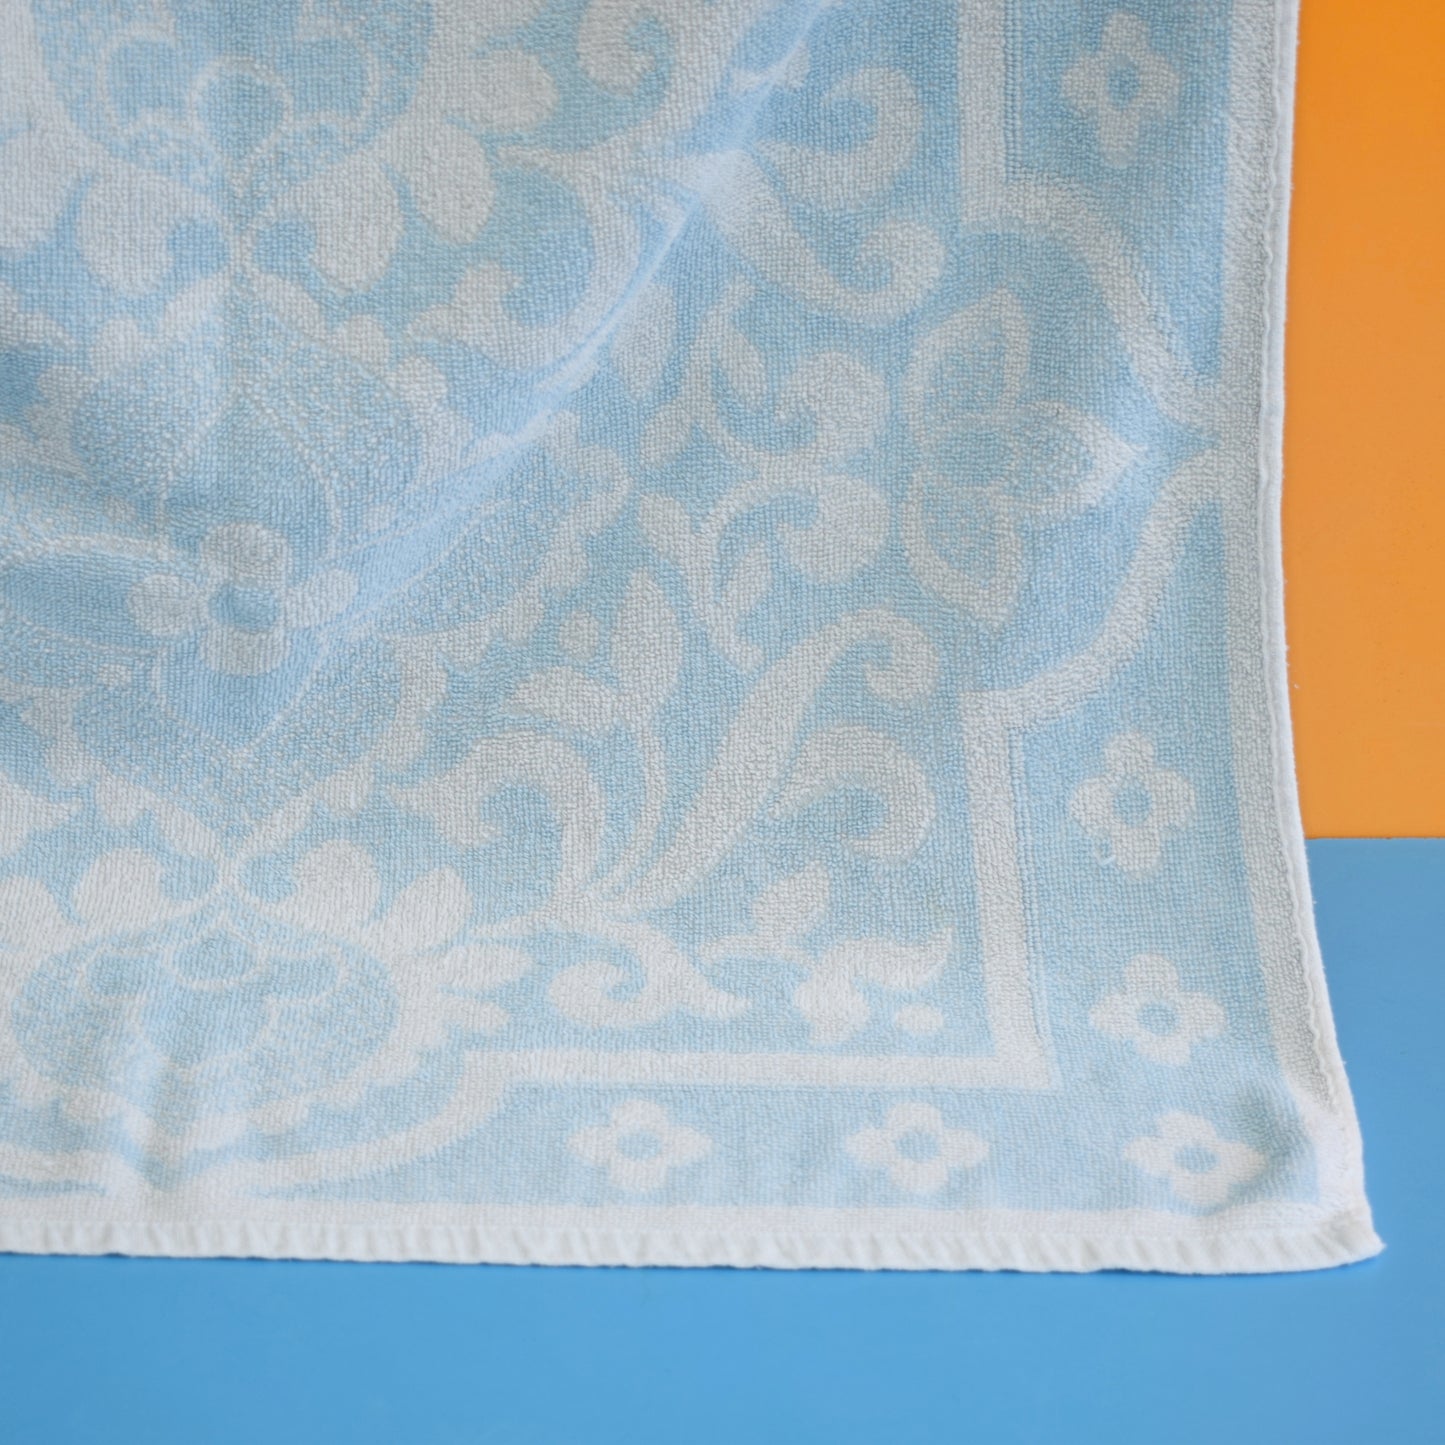 Vintage 1960s Cotton Bath Towel - Pale Blue